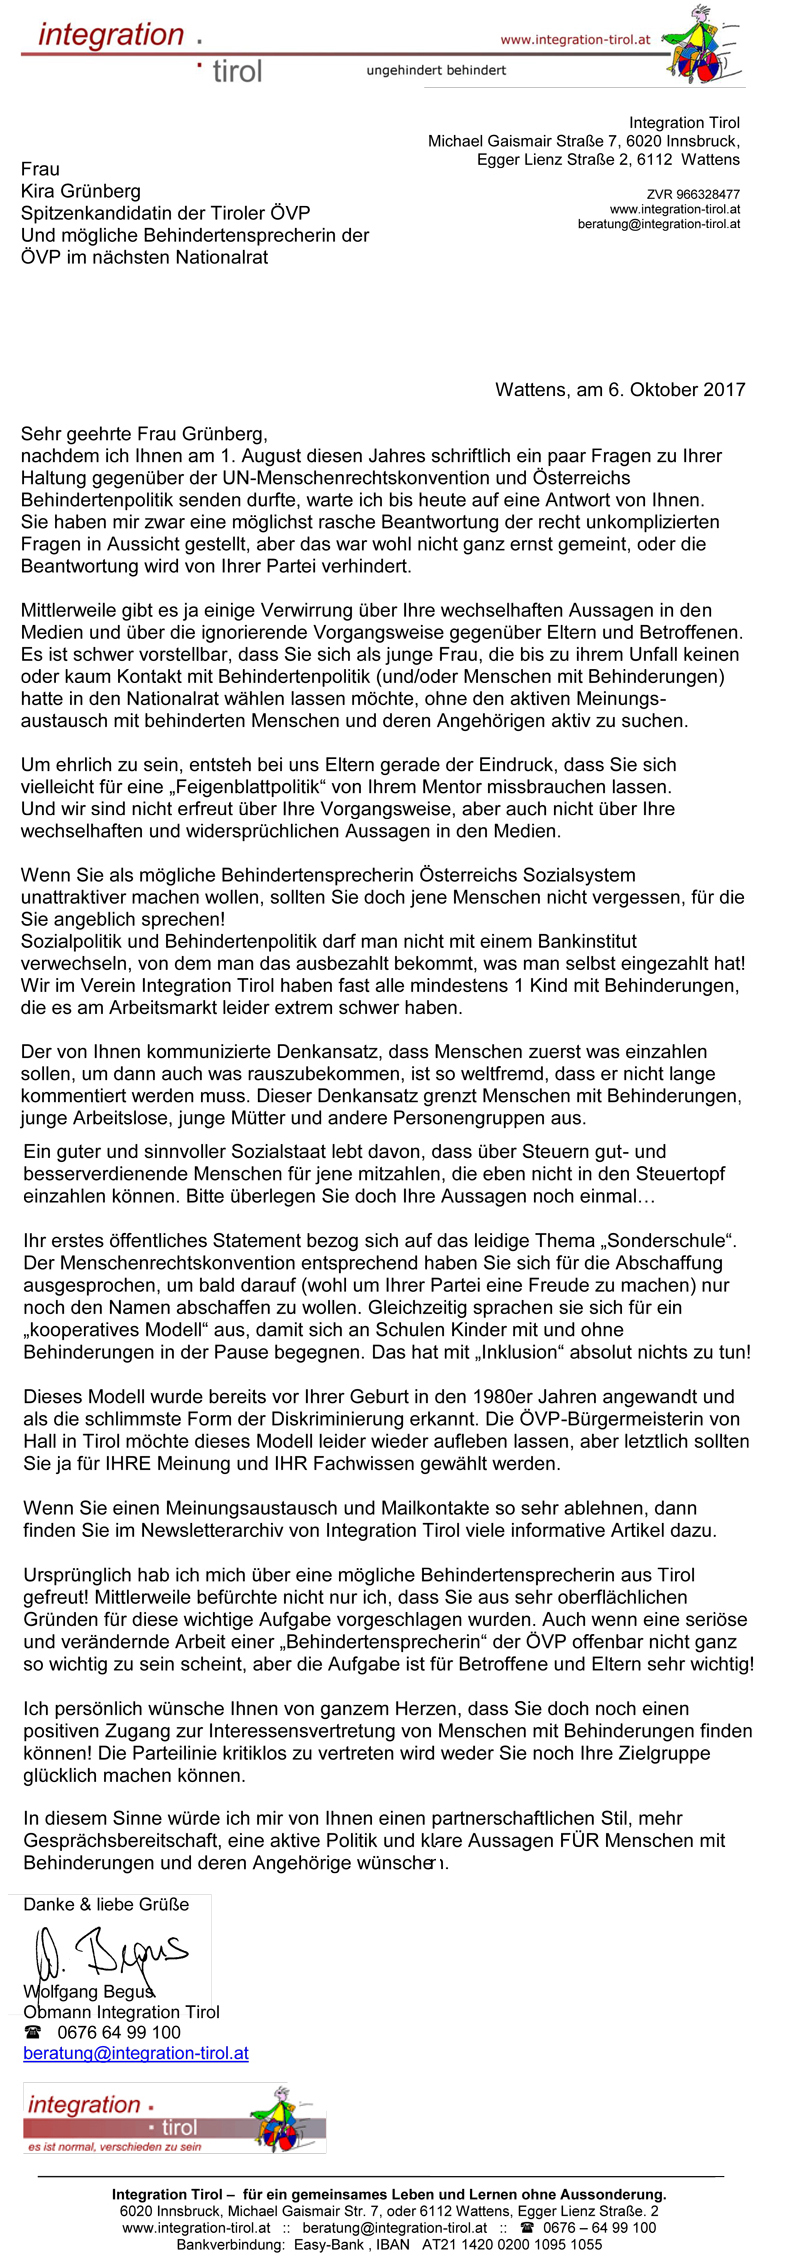 offener Brief an Kira Grünberg